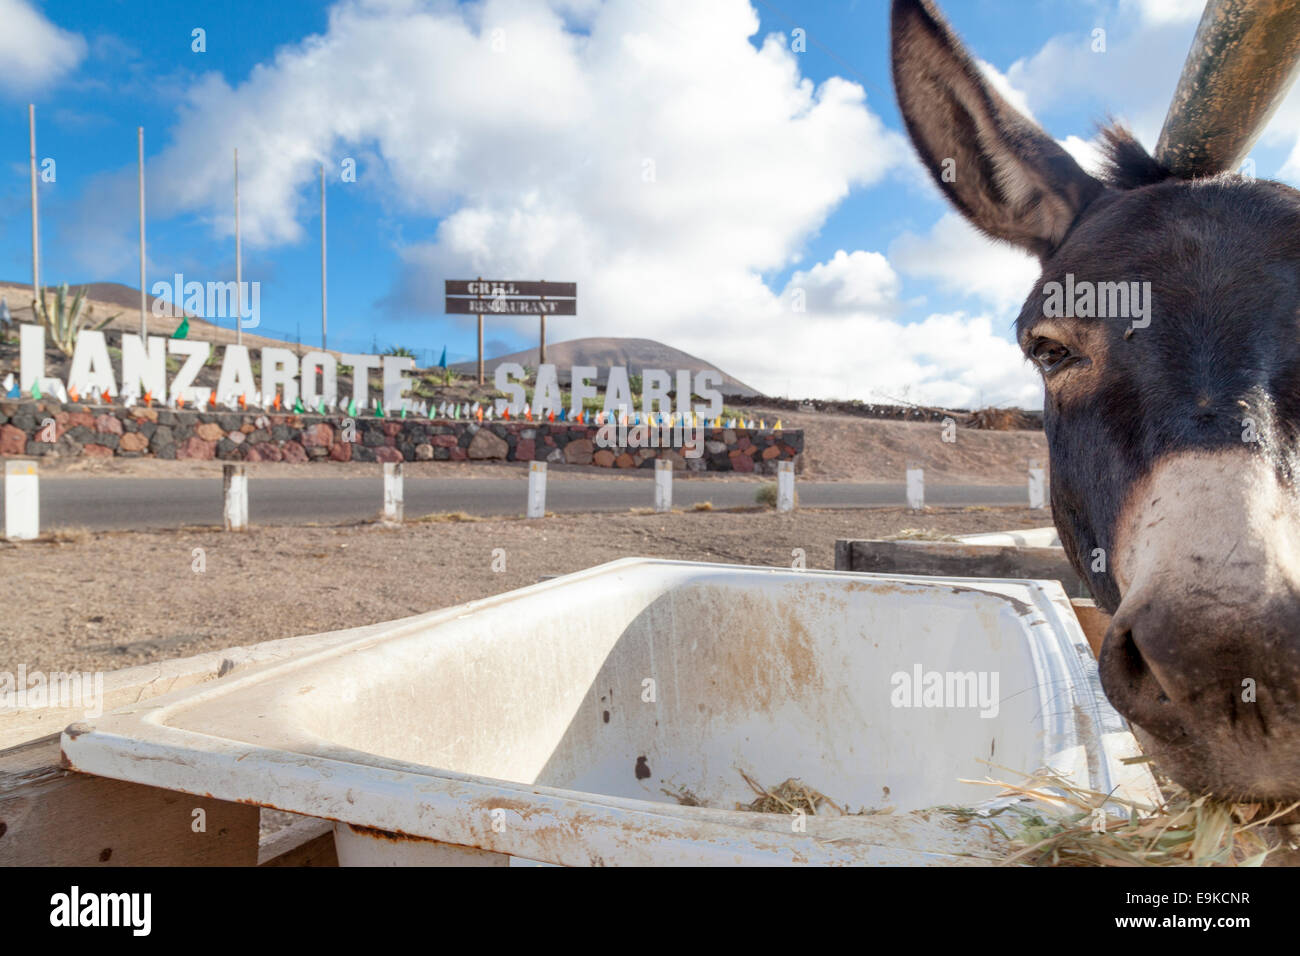 Donkey at Lanzarote Safaris Stock Photo